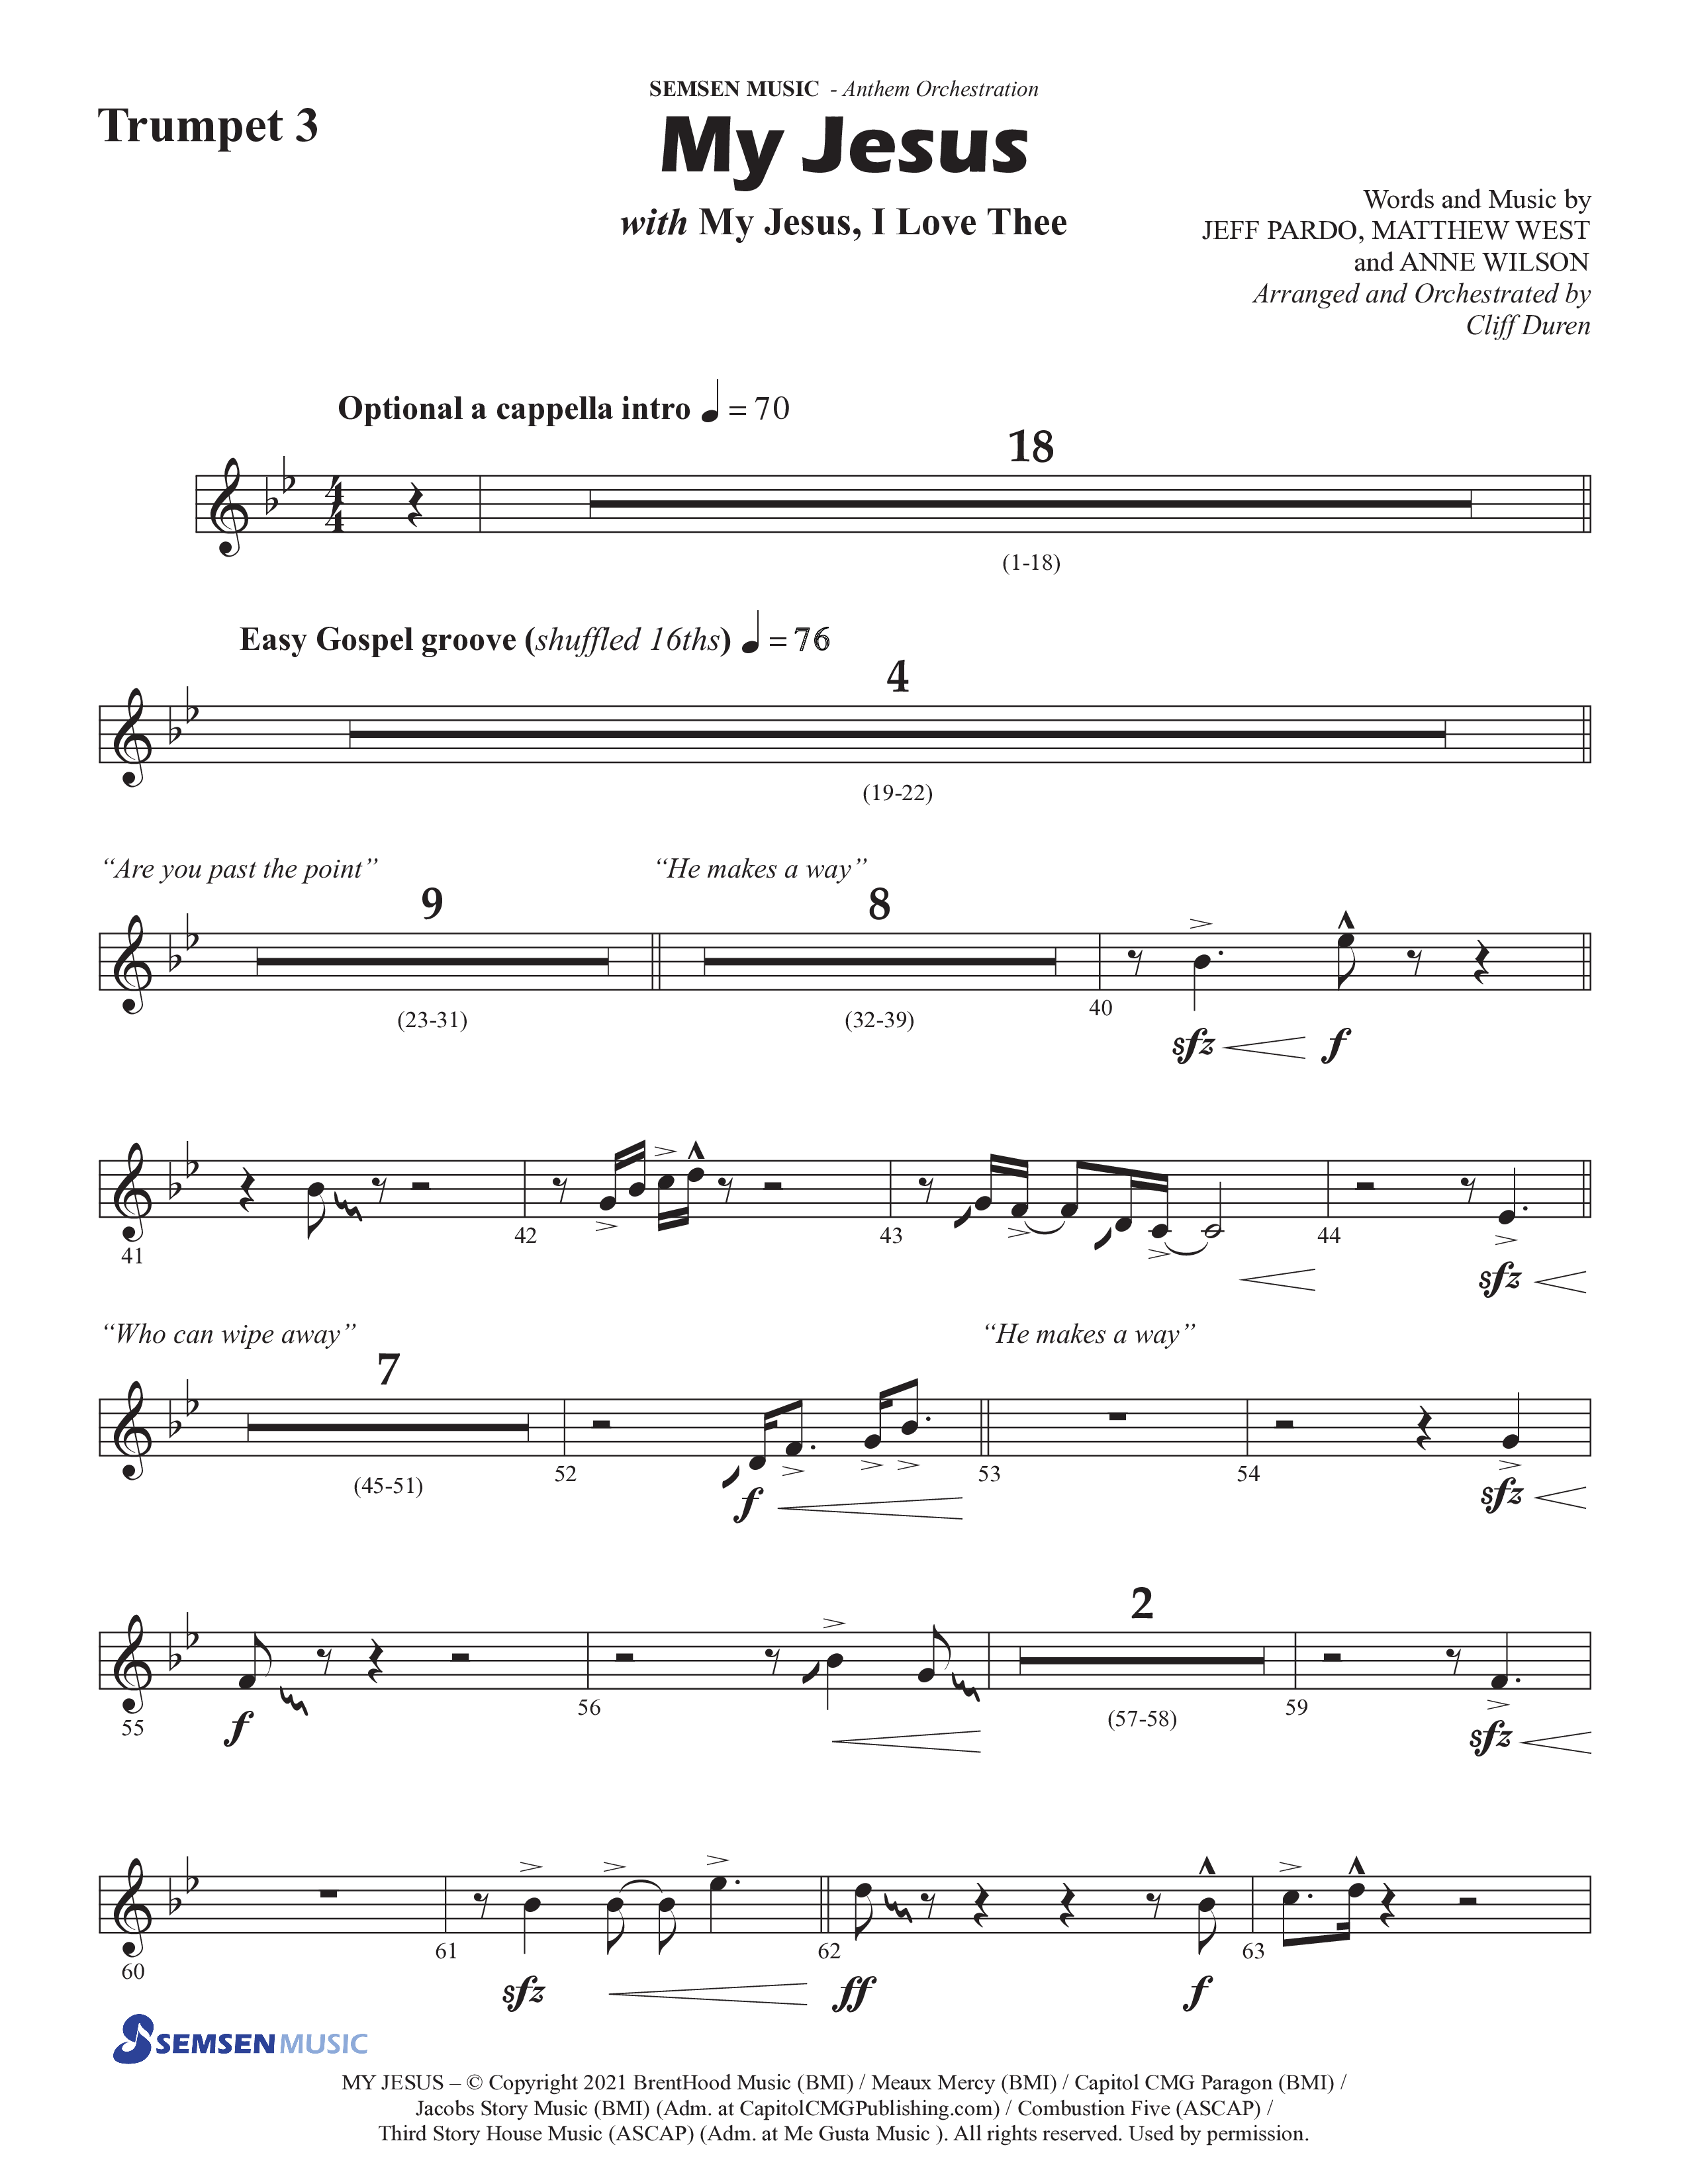 My Jesus (with My Jesus I Love Thee) (Choral Anthem SATB) Trumpet 3 (Semsen Music / Arr. Cliff Duren)